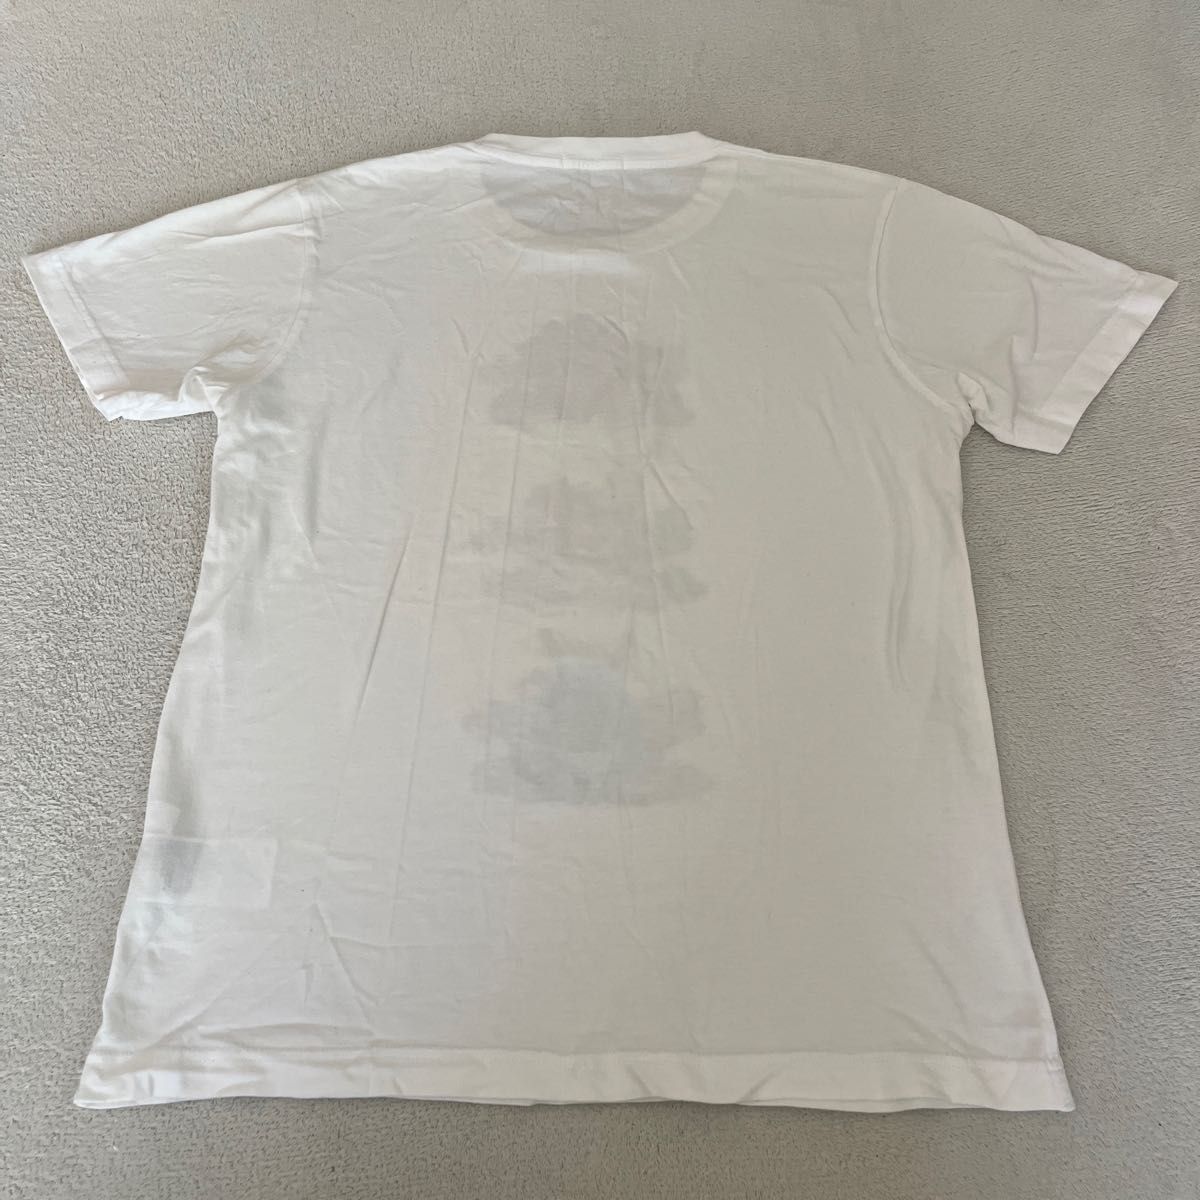 【使用少なめ】ユニクロ UT UNIQLO×NARUTO メンズ Tシャツ M 半袖Tシャツ